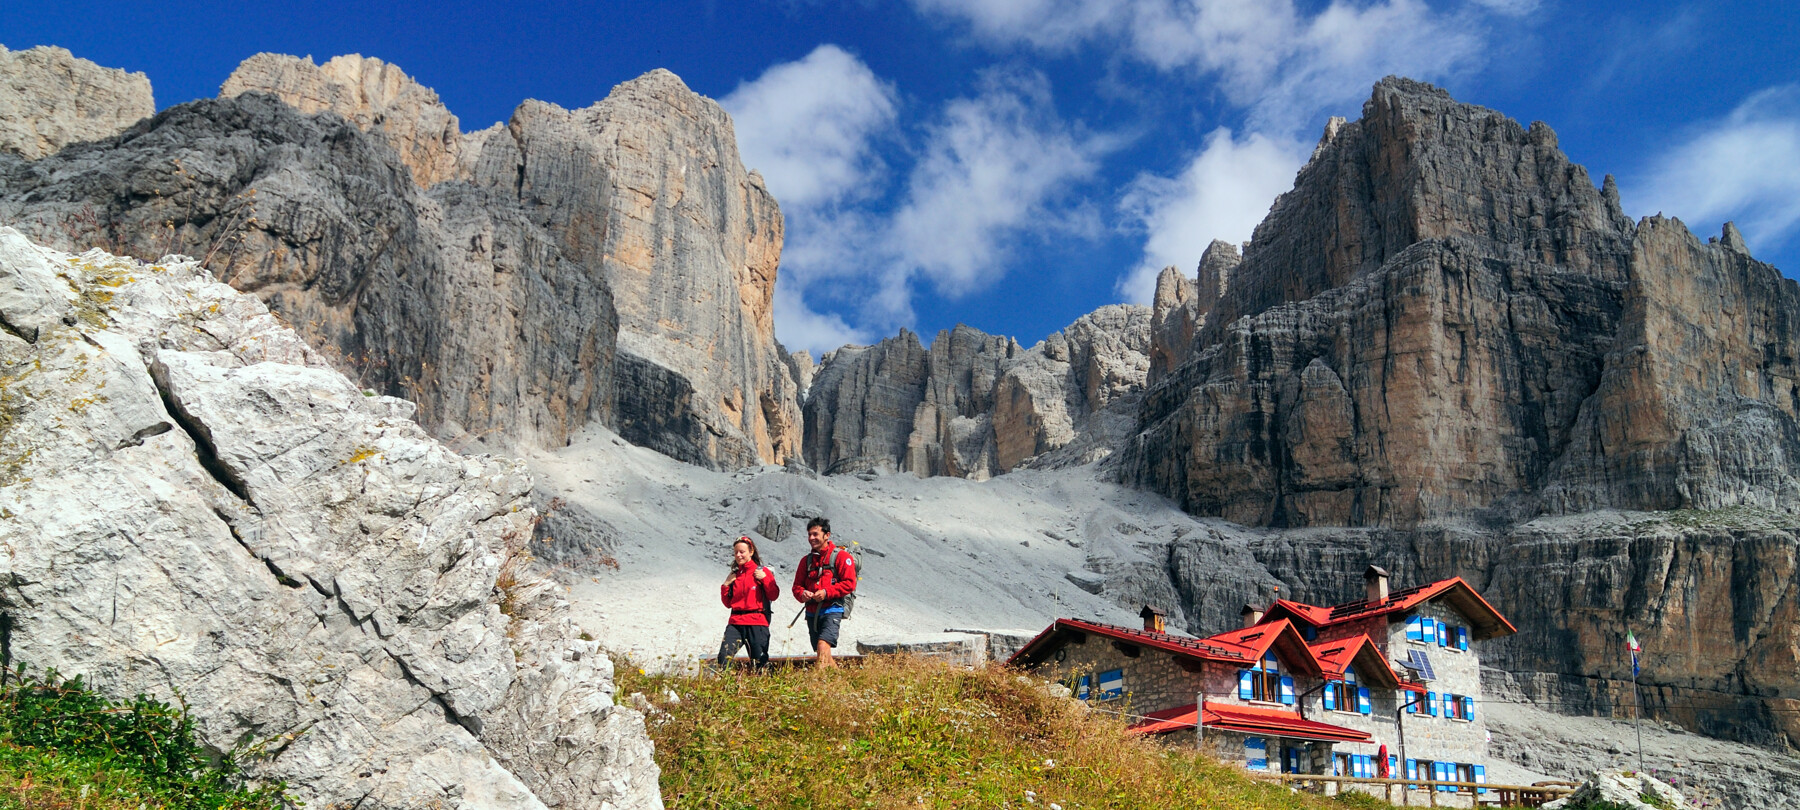 Horolezectví v Dolomitech: Via delle Normali